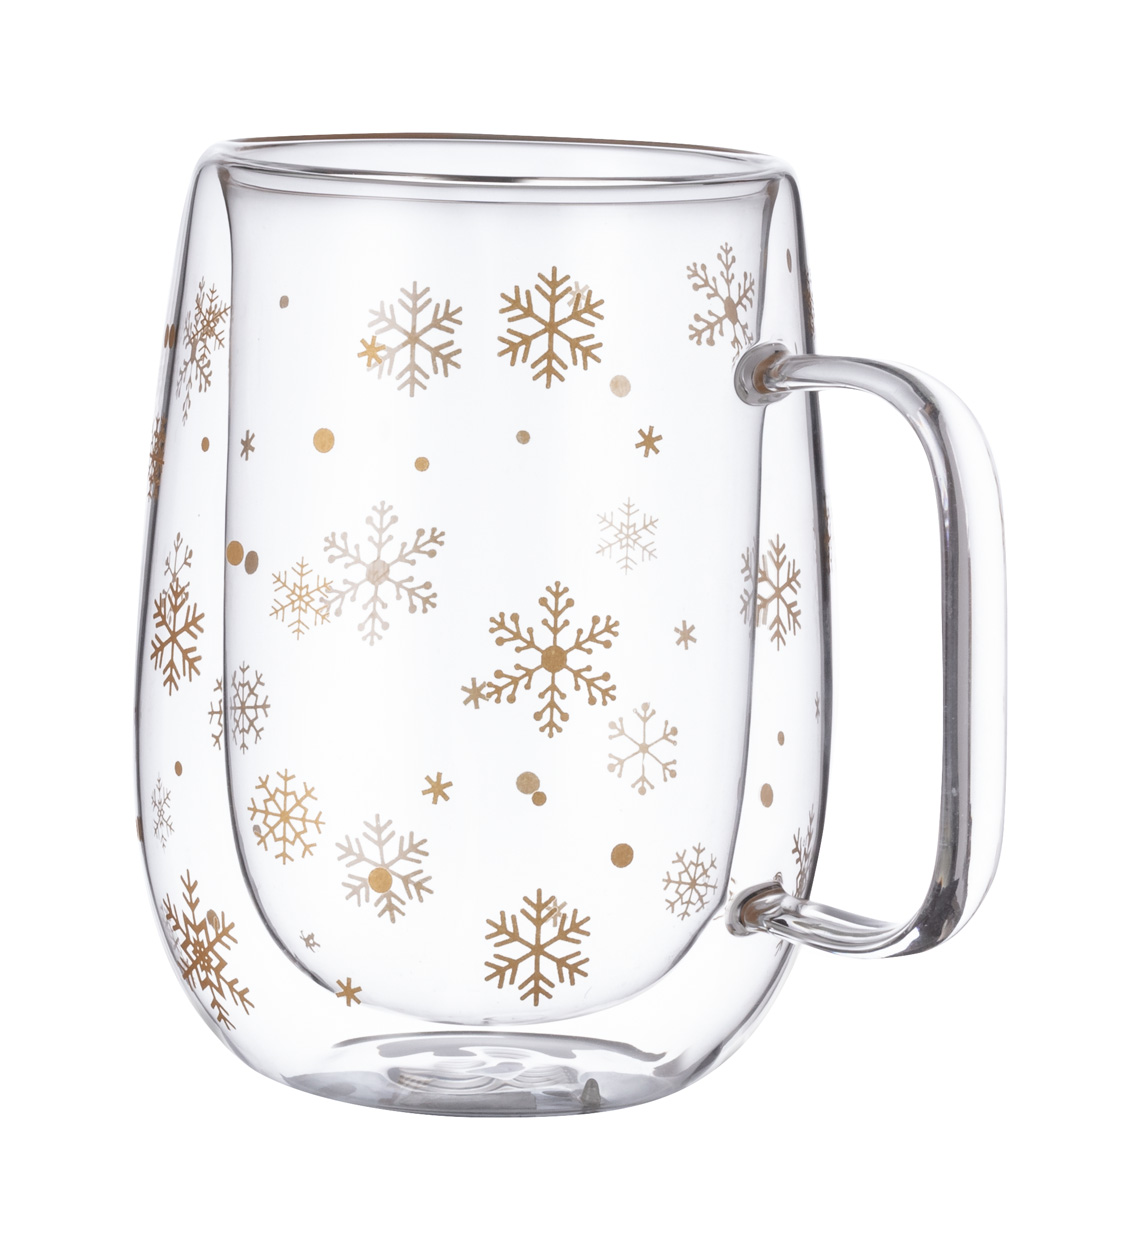 Doglex Christmas thermo mug - transparent